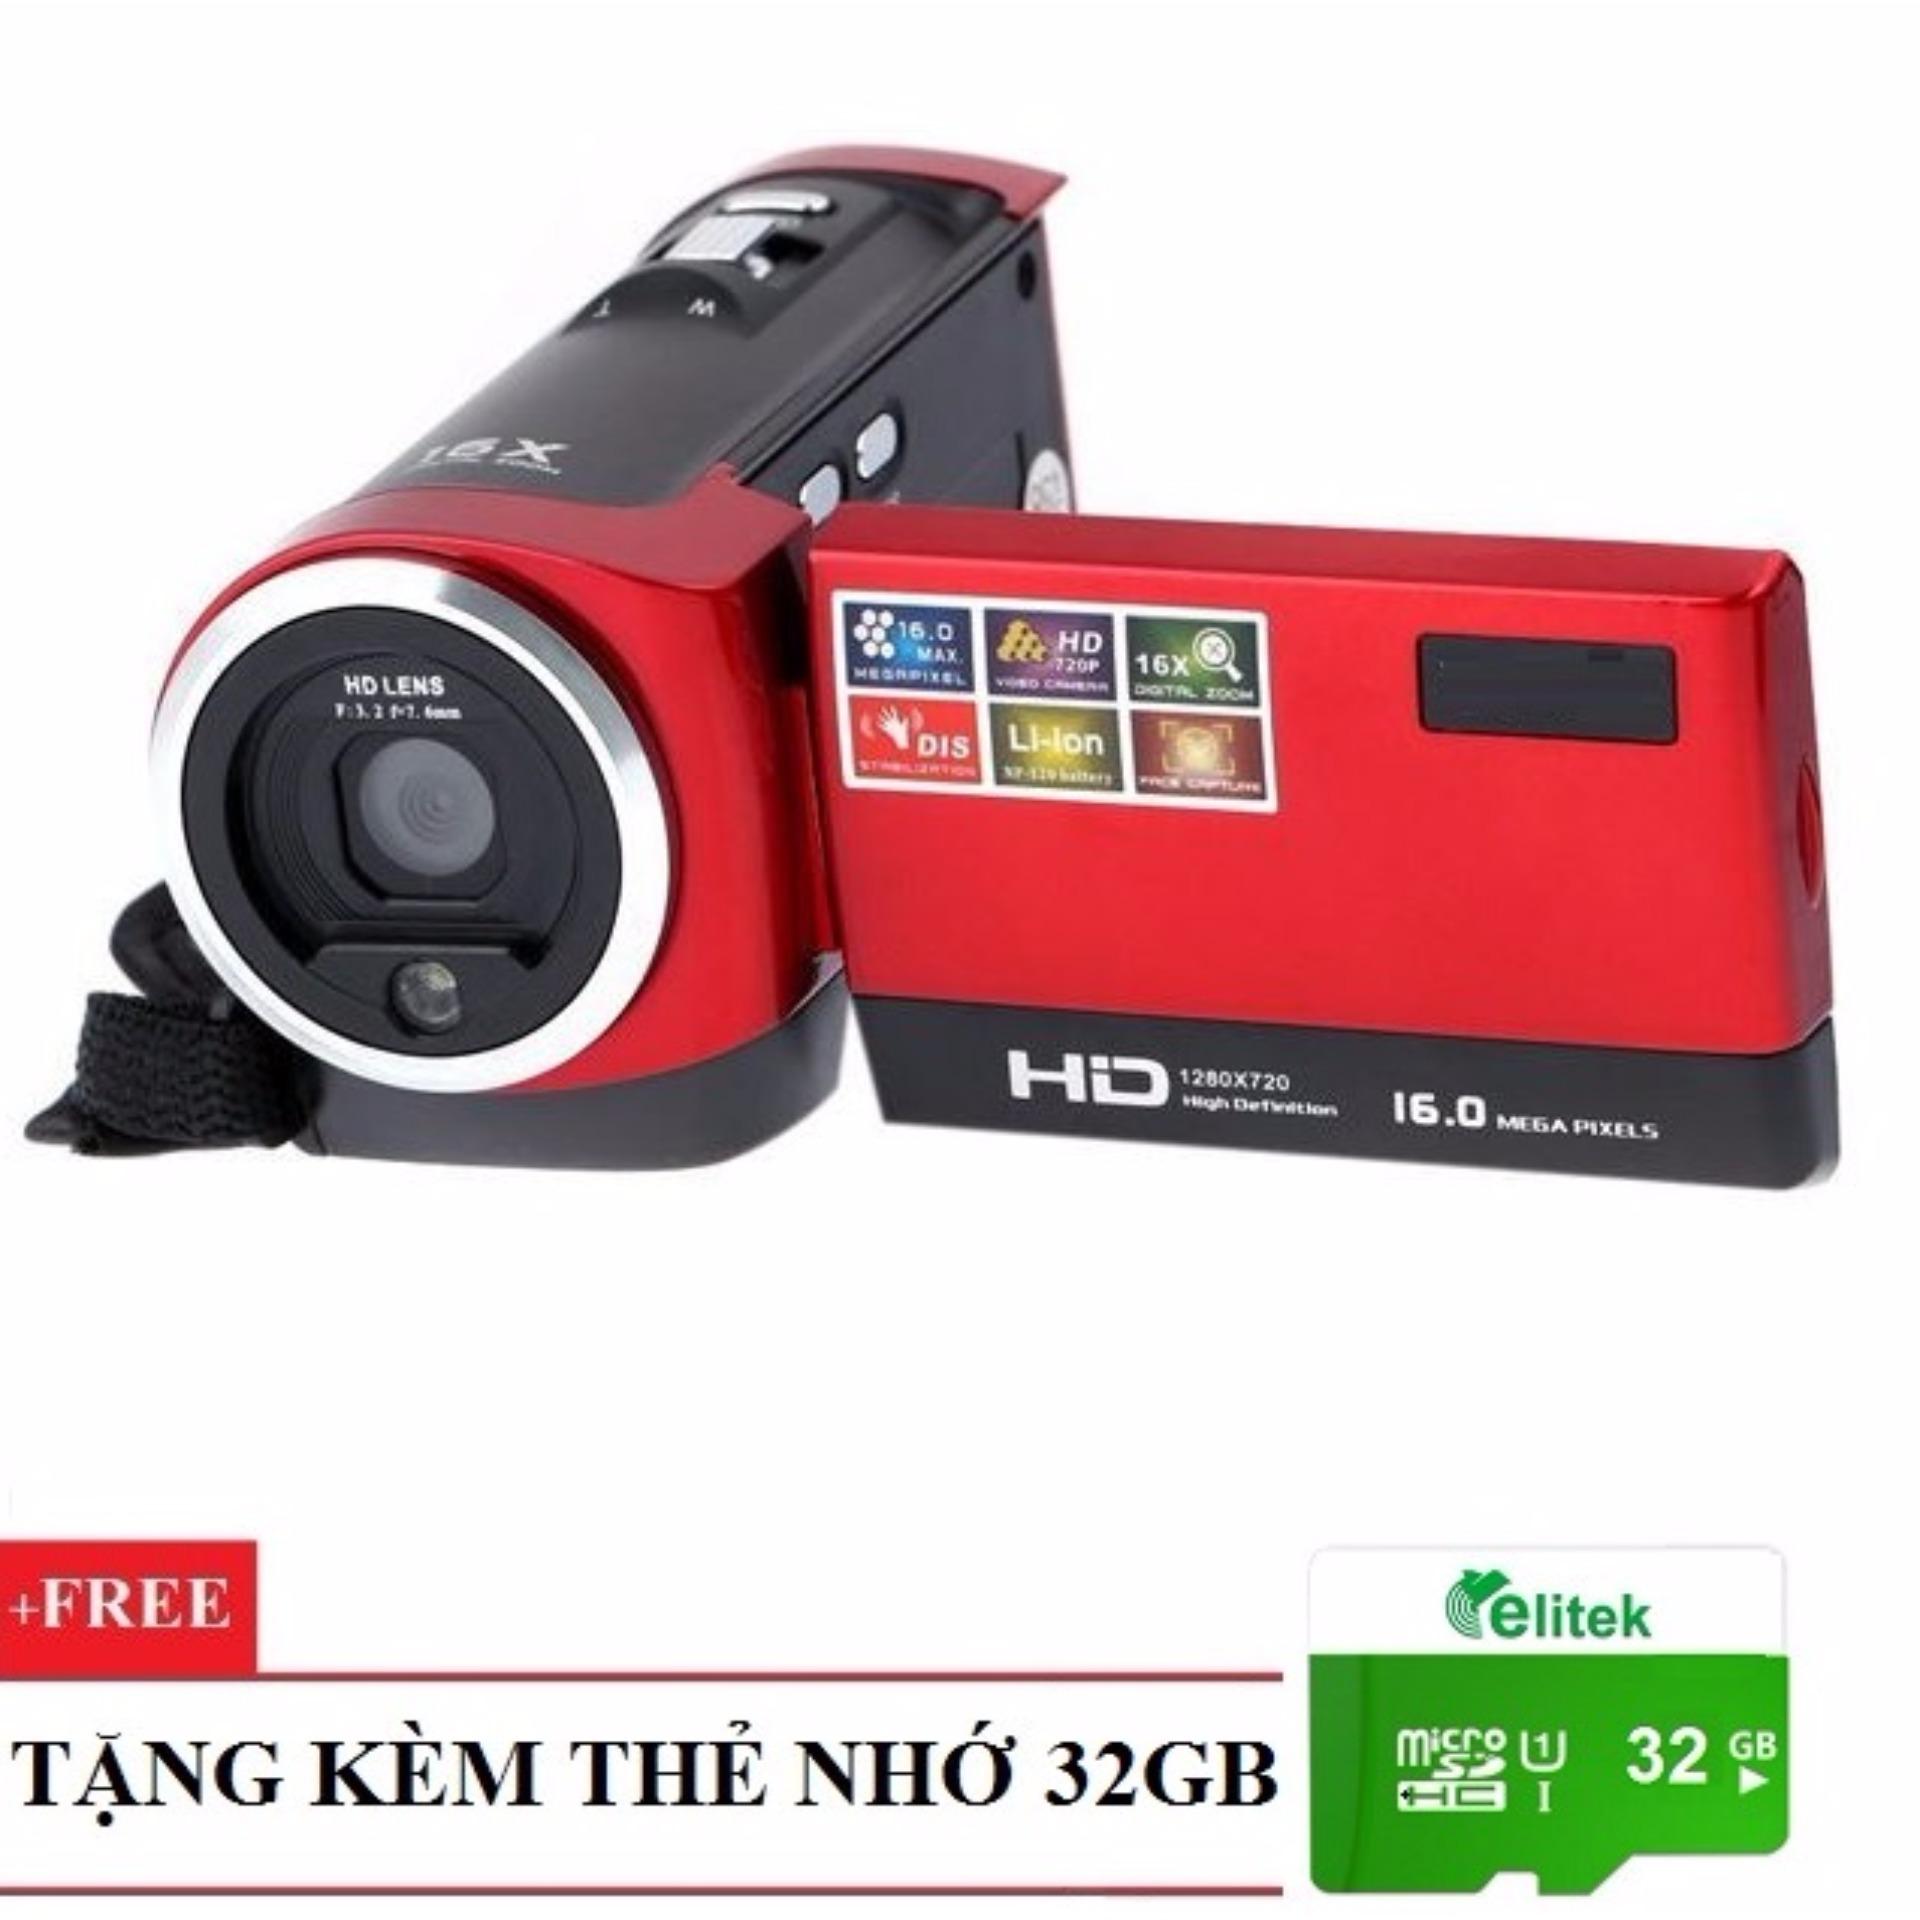 Máy quay phim cầm tay ELITEK HD Digital Video 16X + Tặng kèm thẻ nhớ 32GB